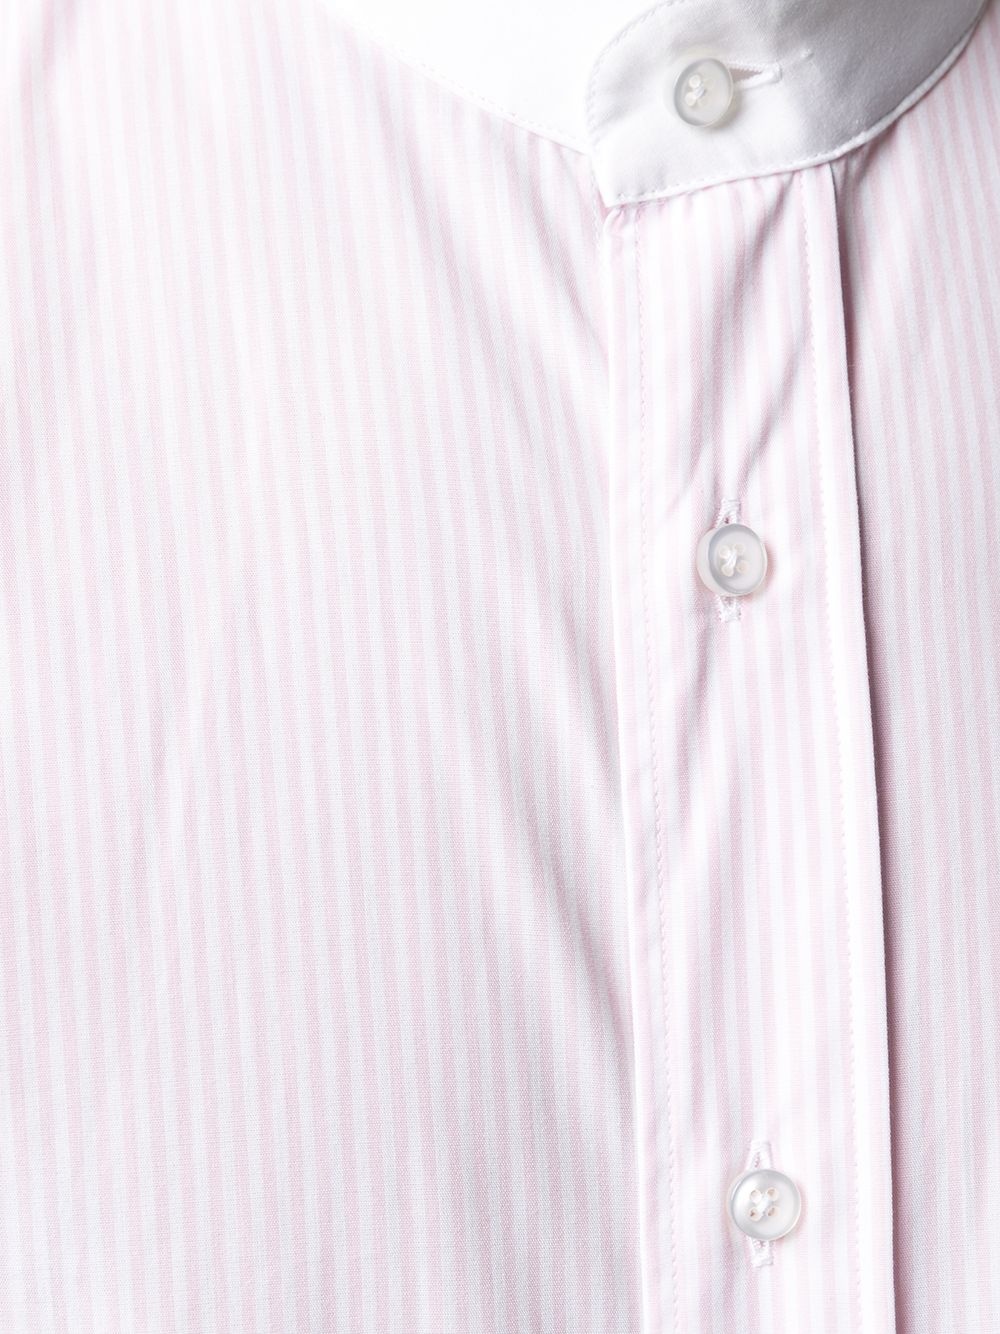 mandarin-collar buttoned shirt - 5